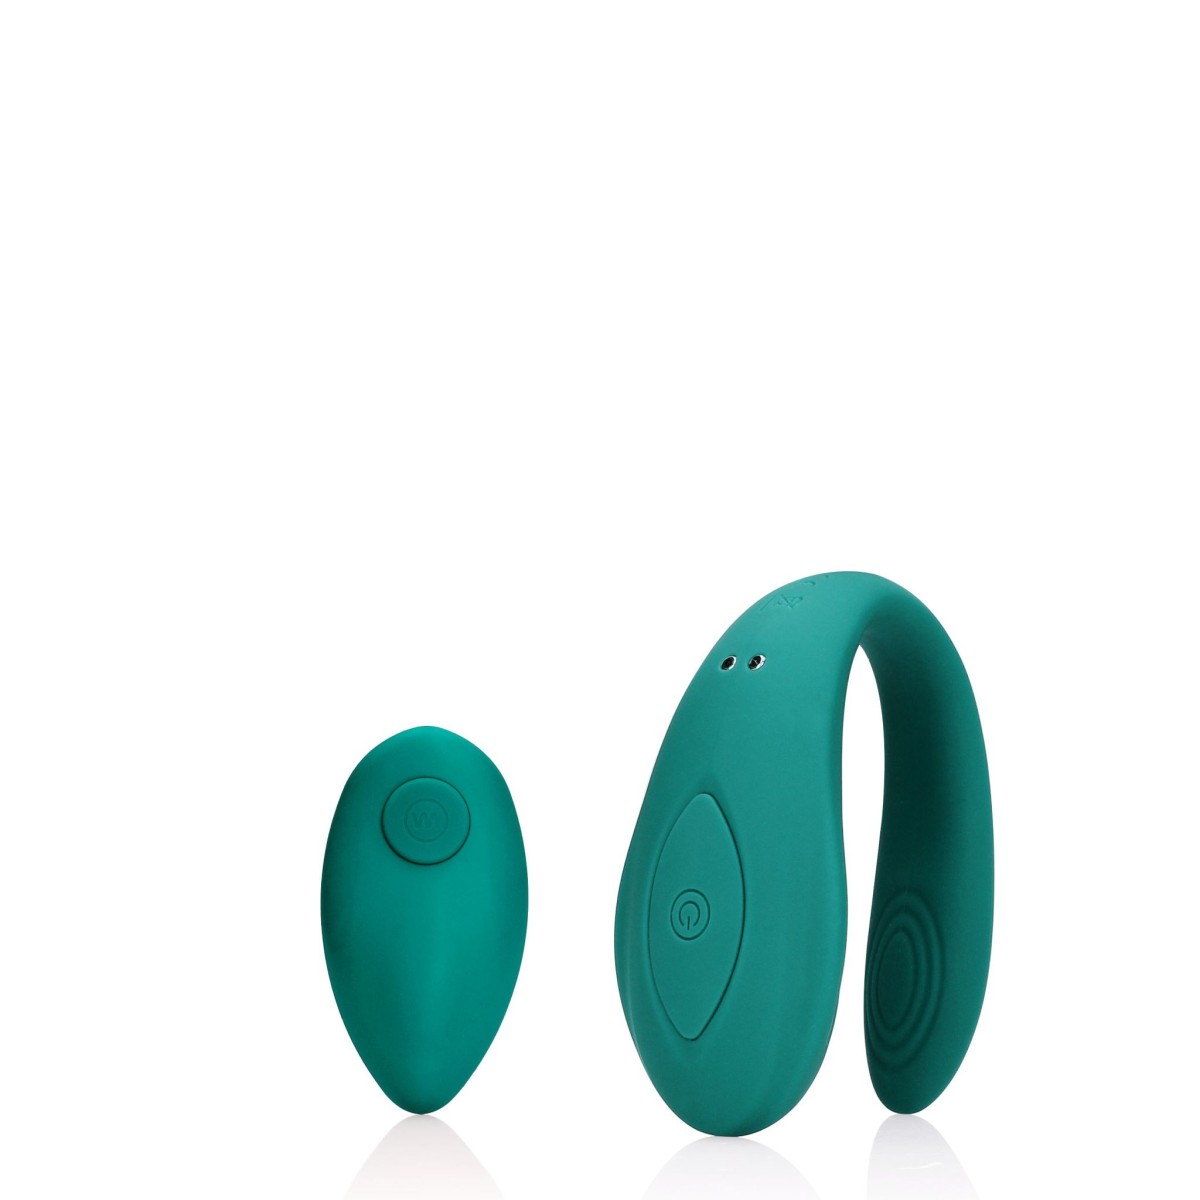 Shots Loveline Couple Toy with Remote Control Bimini Blue, silikonový vibrátor s dálkovým ovládáním